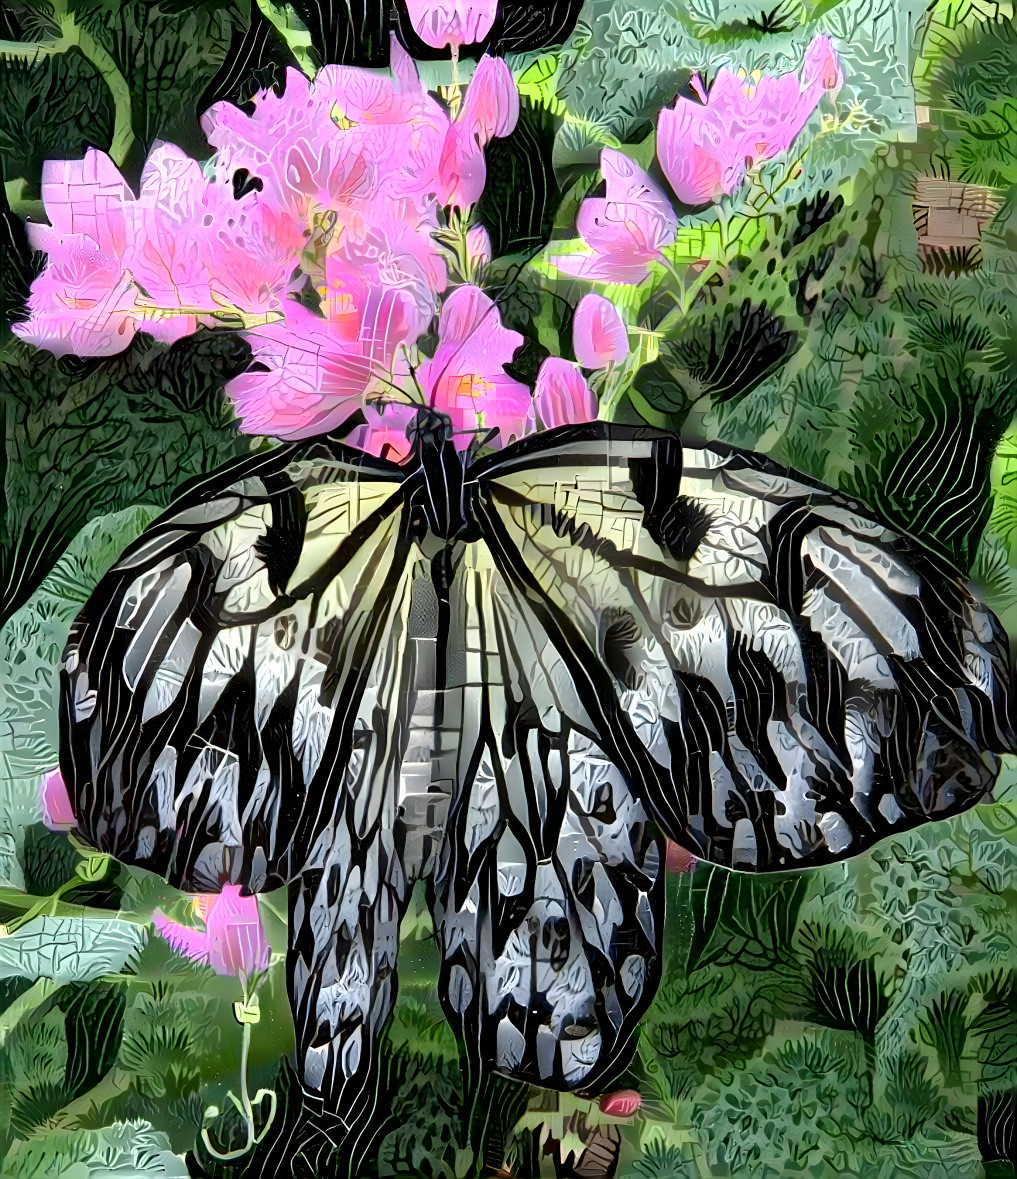 Butterfly on Penta